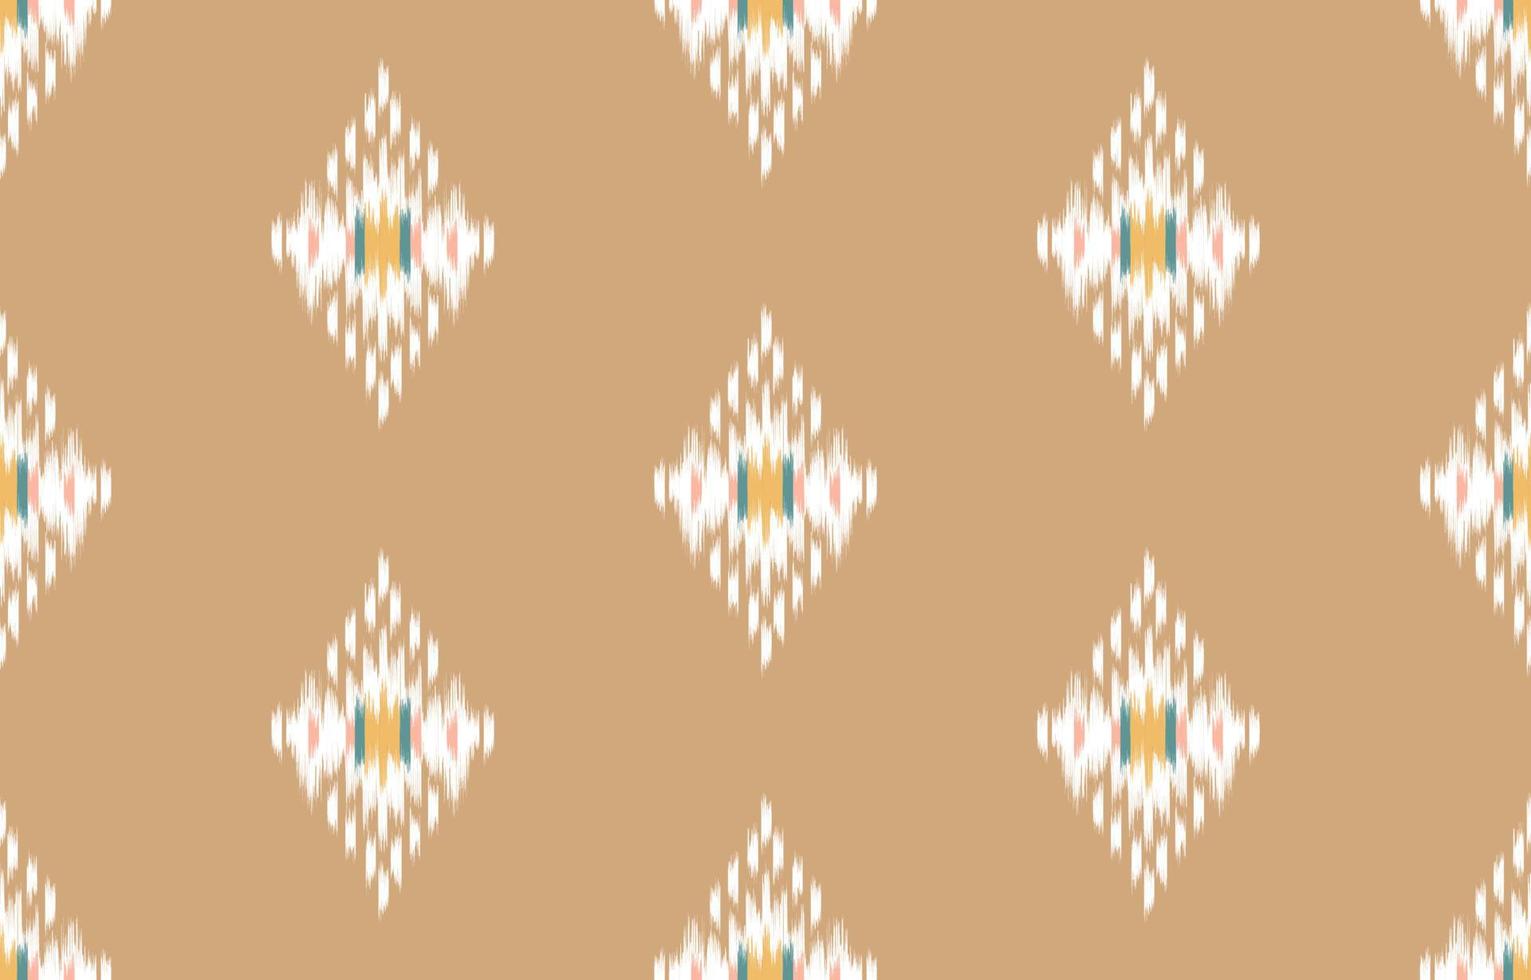 patrón étnico ikat sin fisuras. Fondo de vector de bordado tradicional indio africano tribal. azteca tela alfombra batik ornamento cheurón textil decoración papel pintado